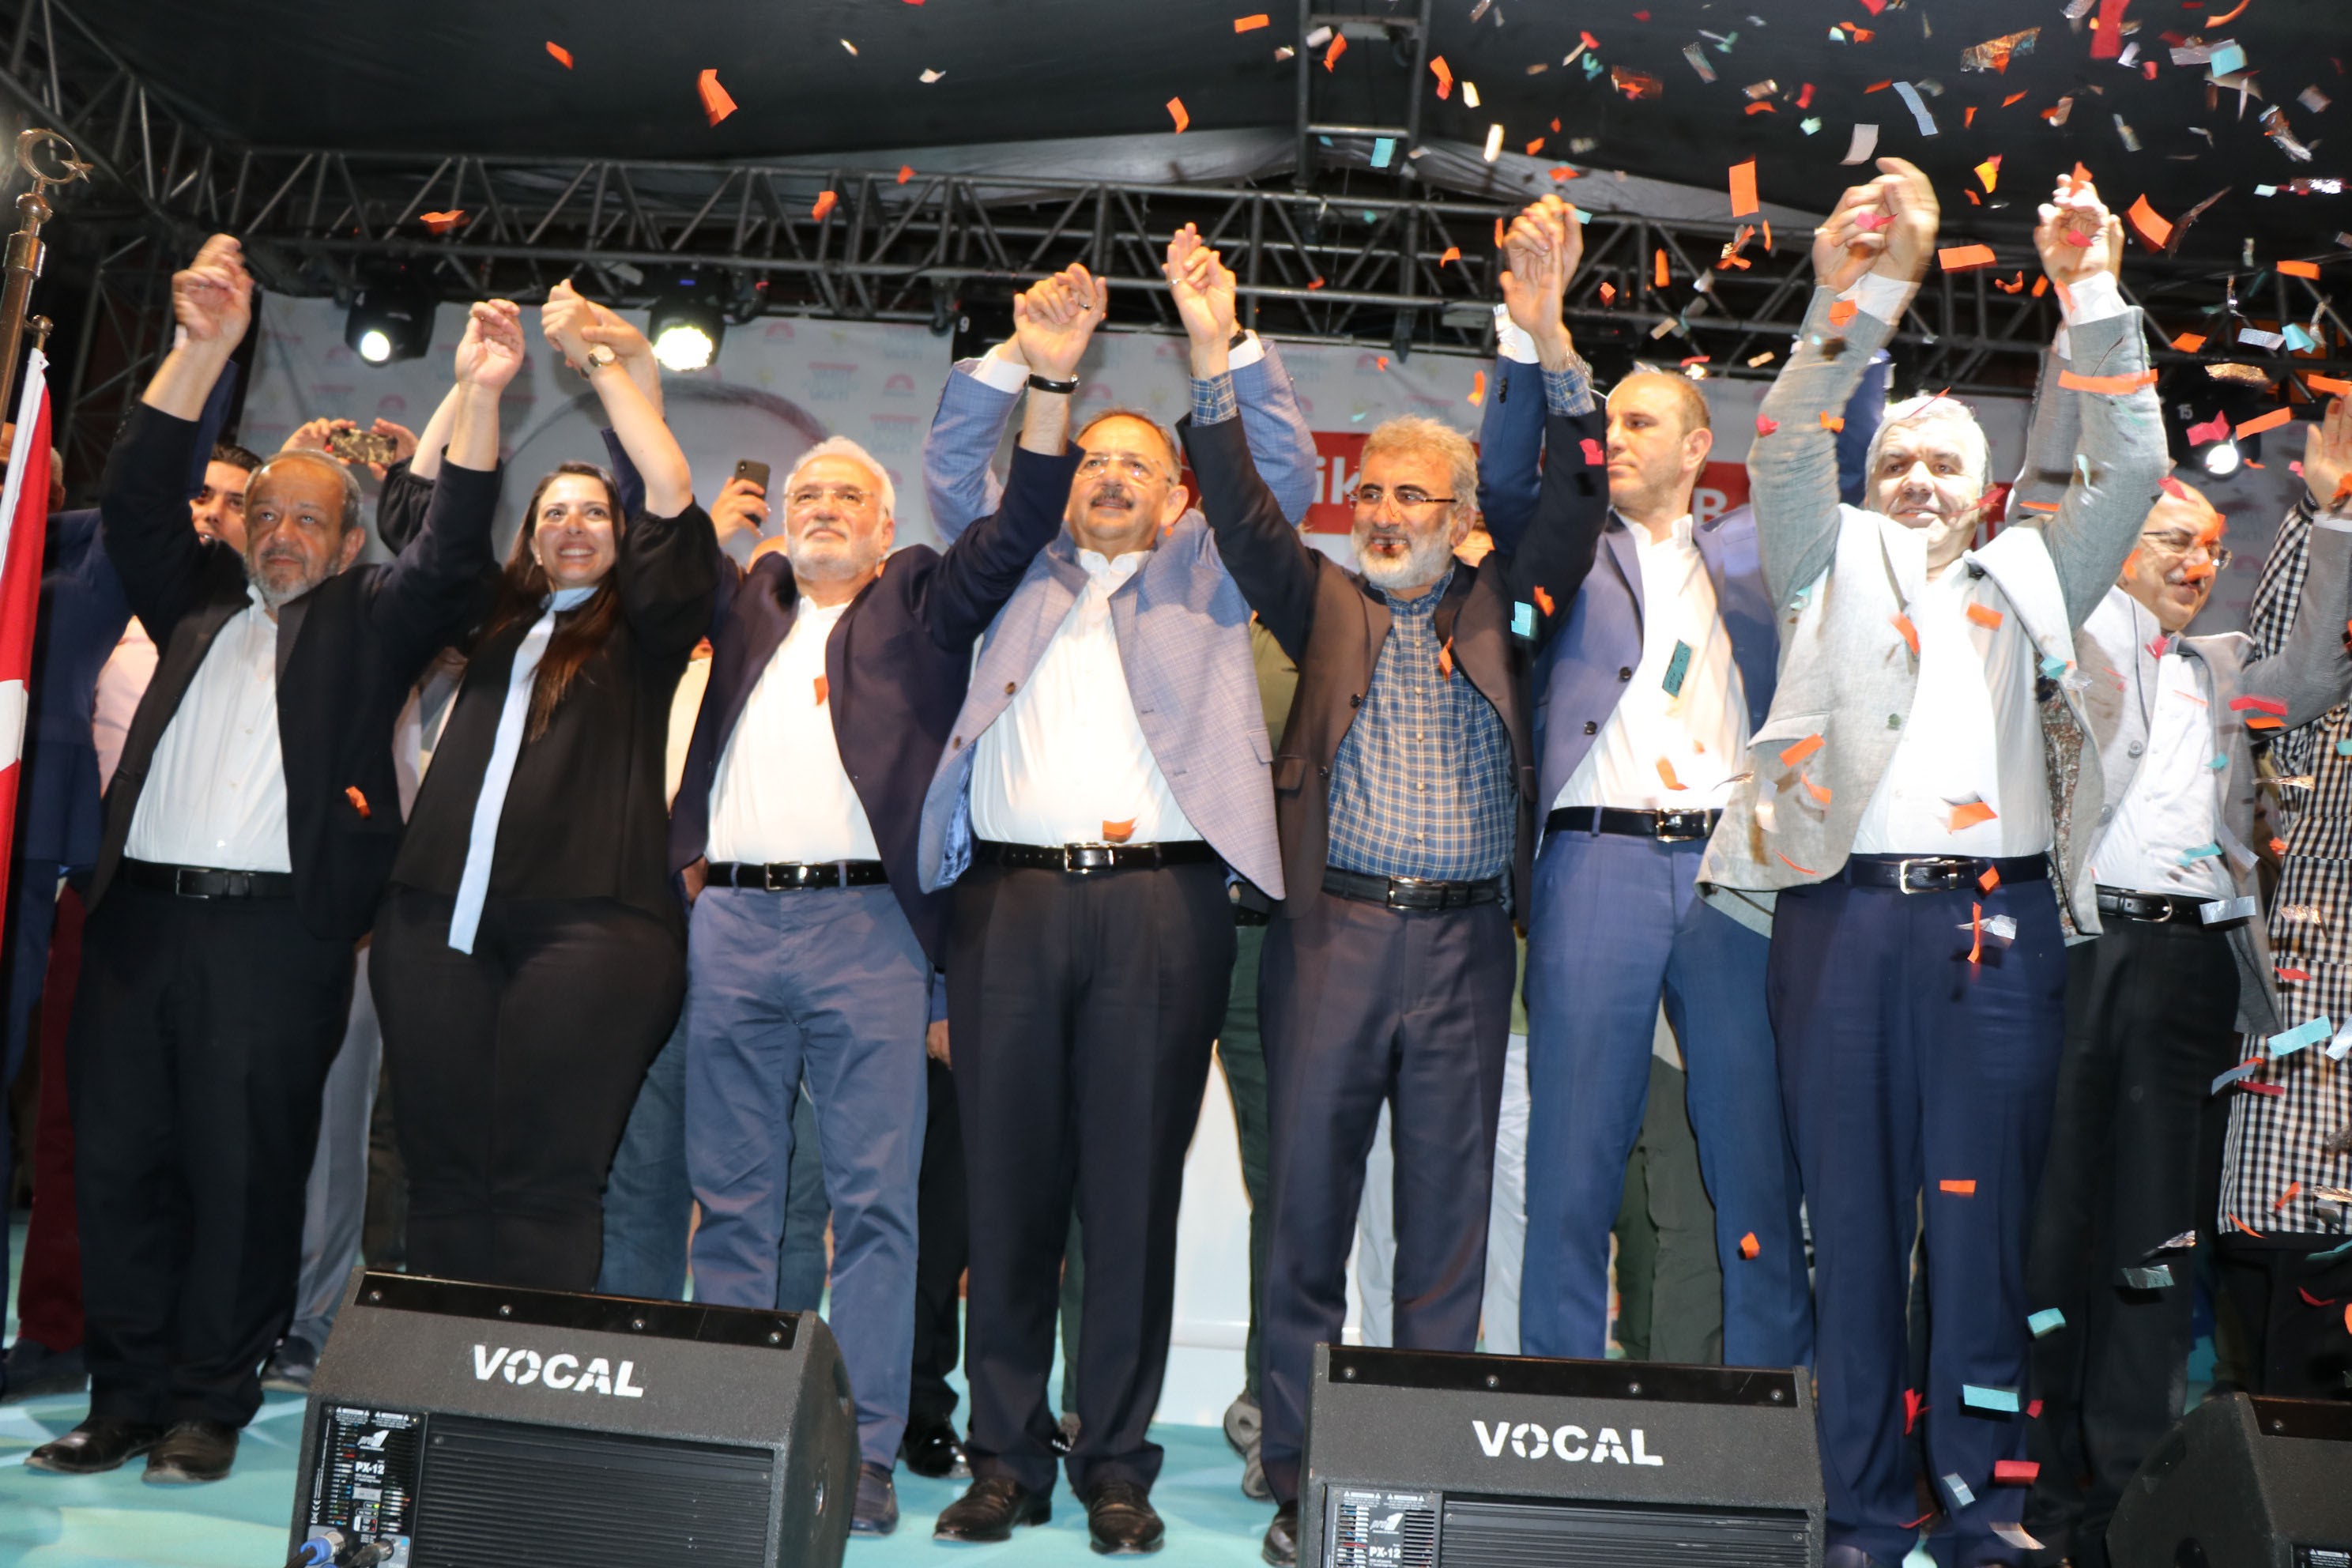 Çevre ve Şehircilik Bakanı Özhaseki: “Demokrasi Bayramınız kutlu olsun”